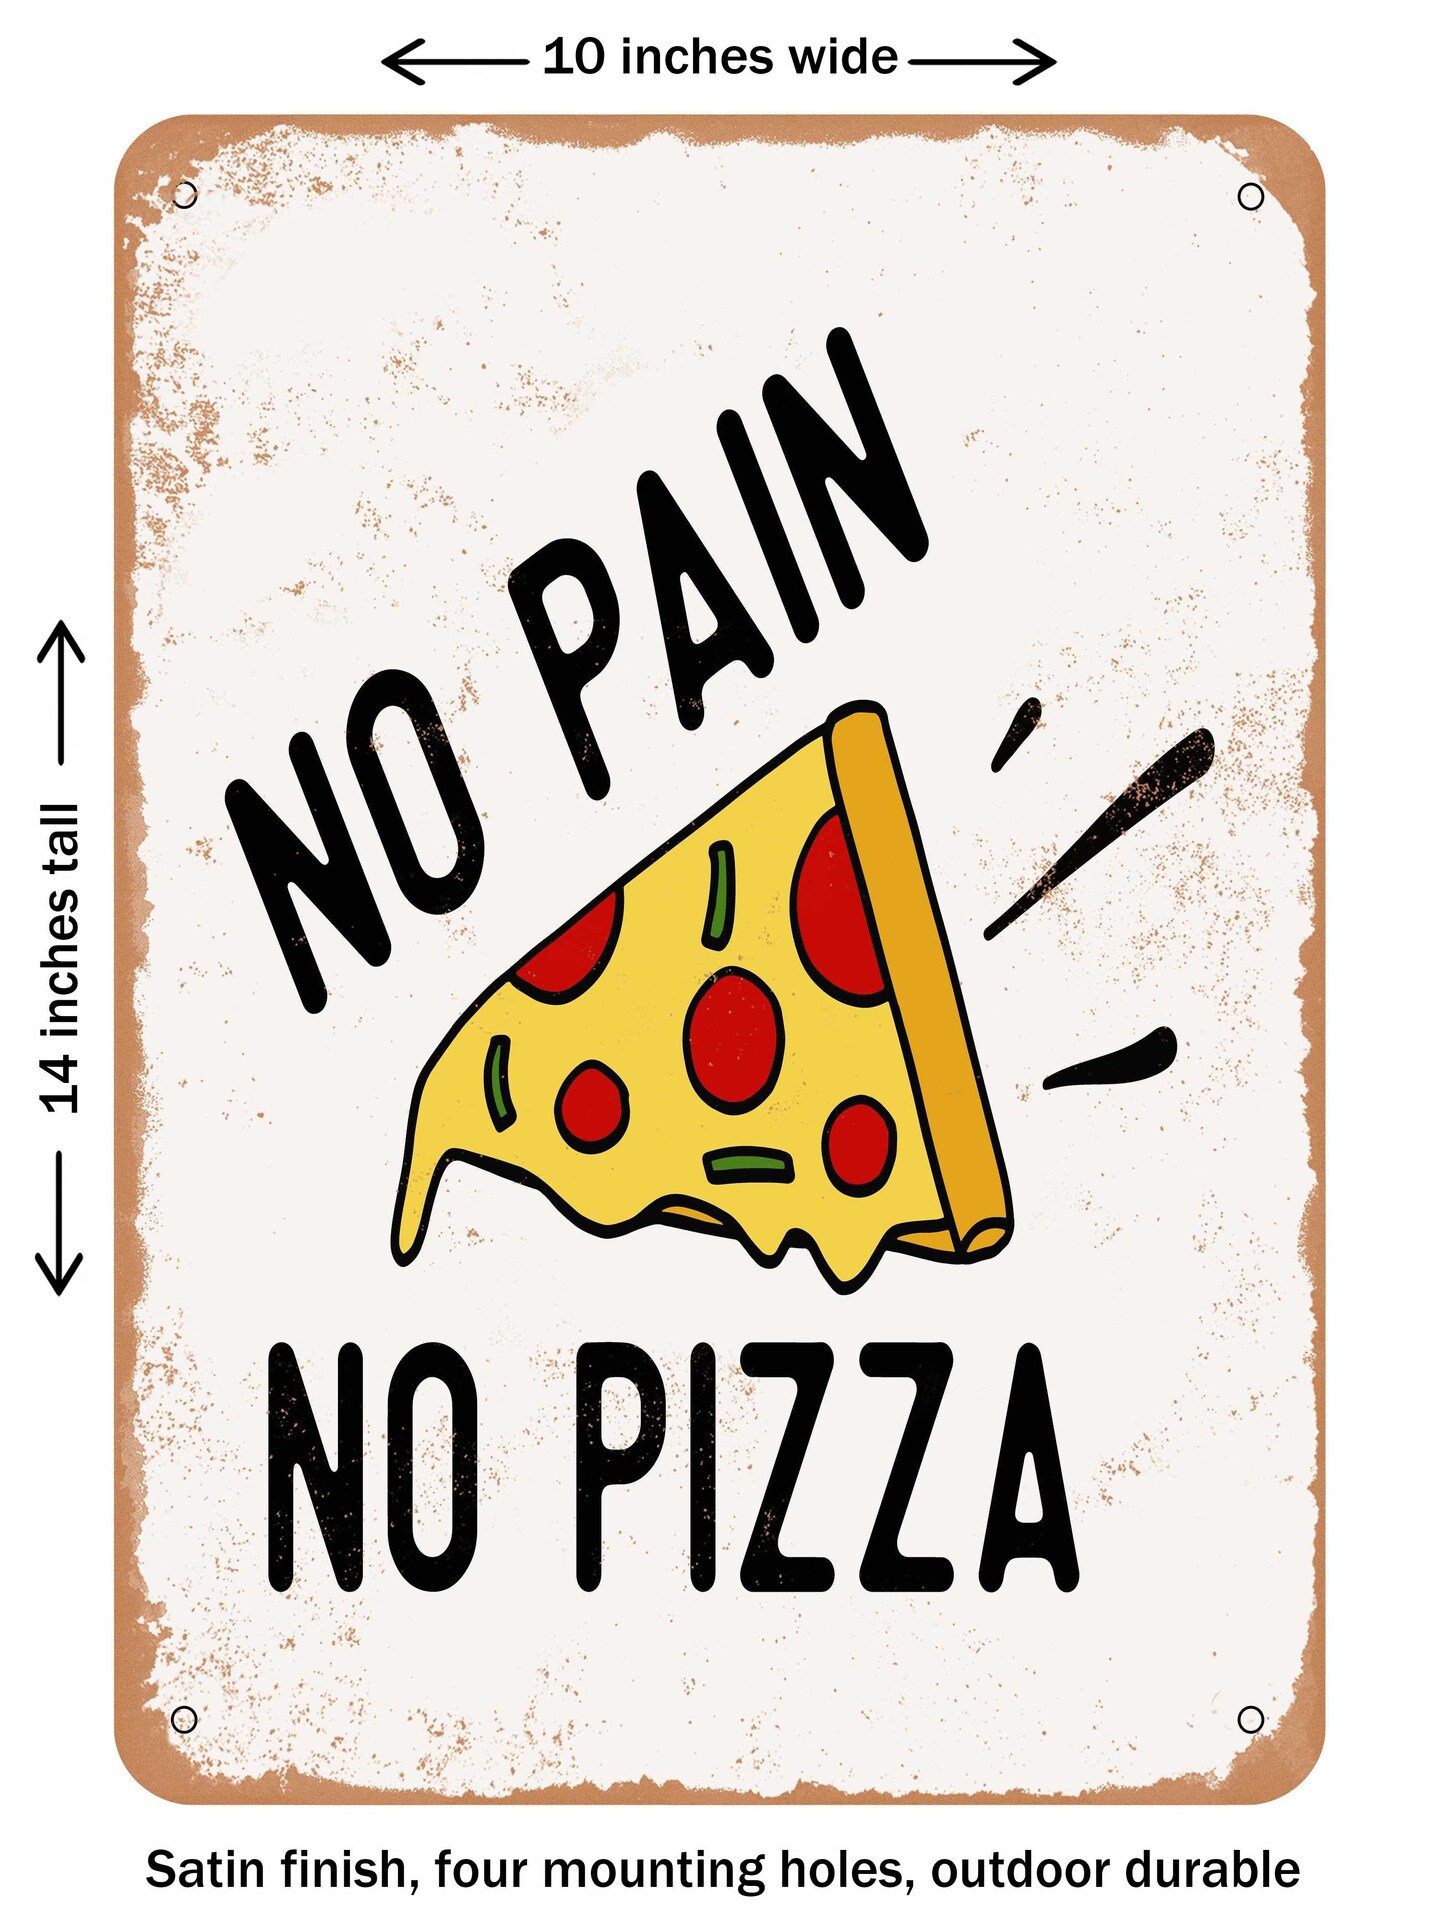 DECORATIVE METAL SIGN - No Pain No Pizza Color - Vintage Rusty Look